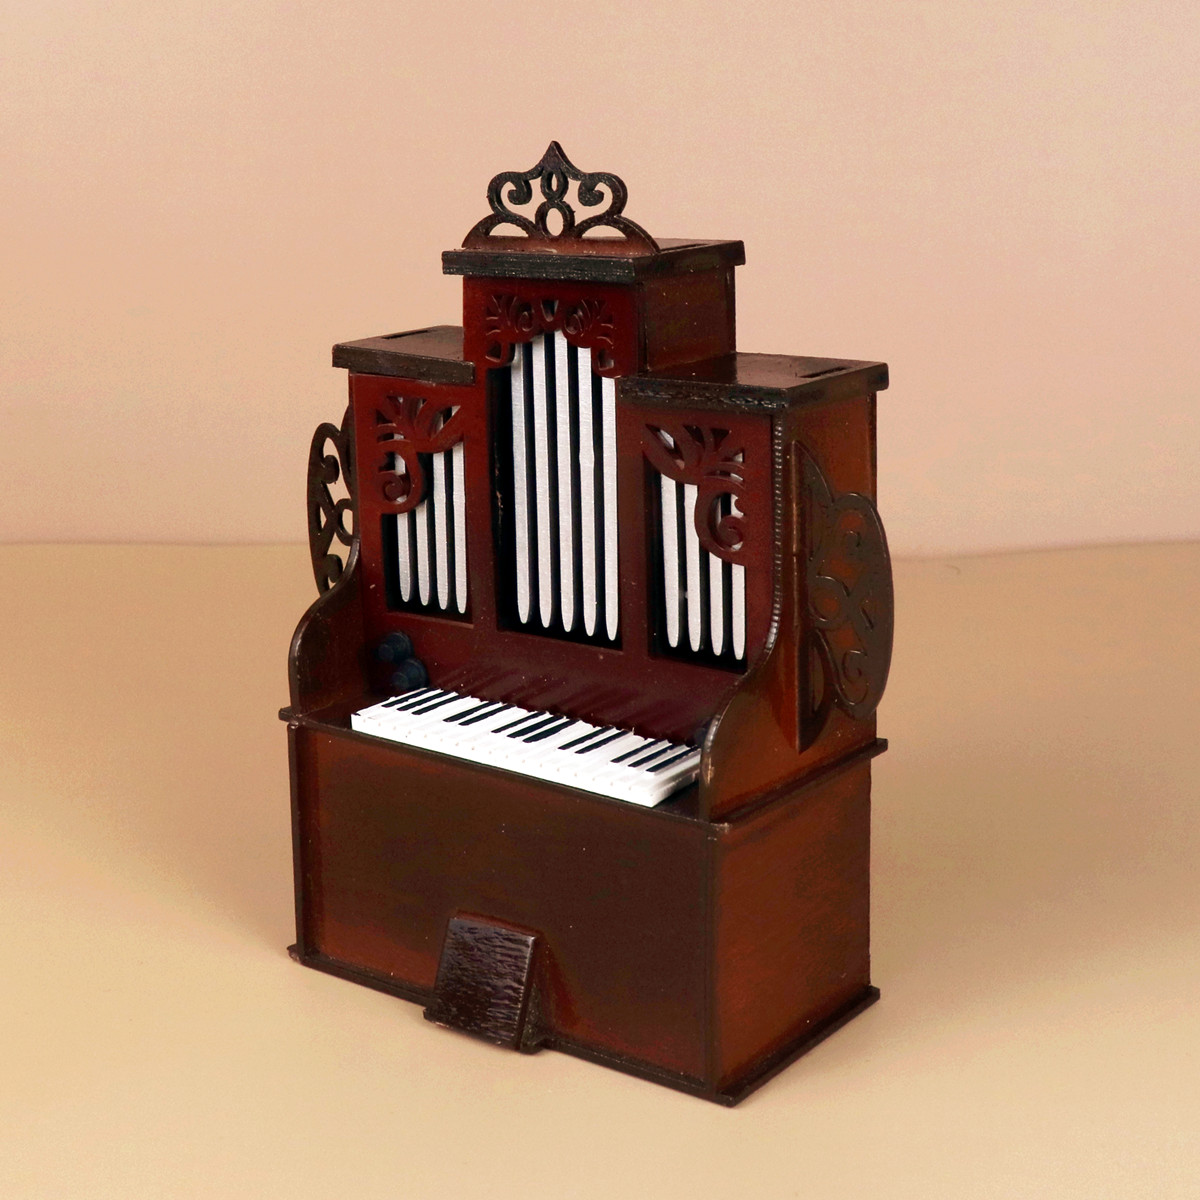 刻字迷你管风琴模型微缩木质西洋乐器创意摆件送老师朋友圣诞送礼 - 图1